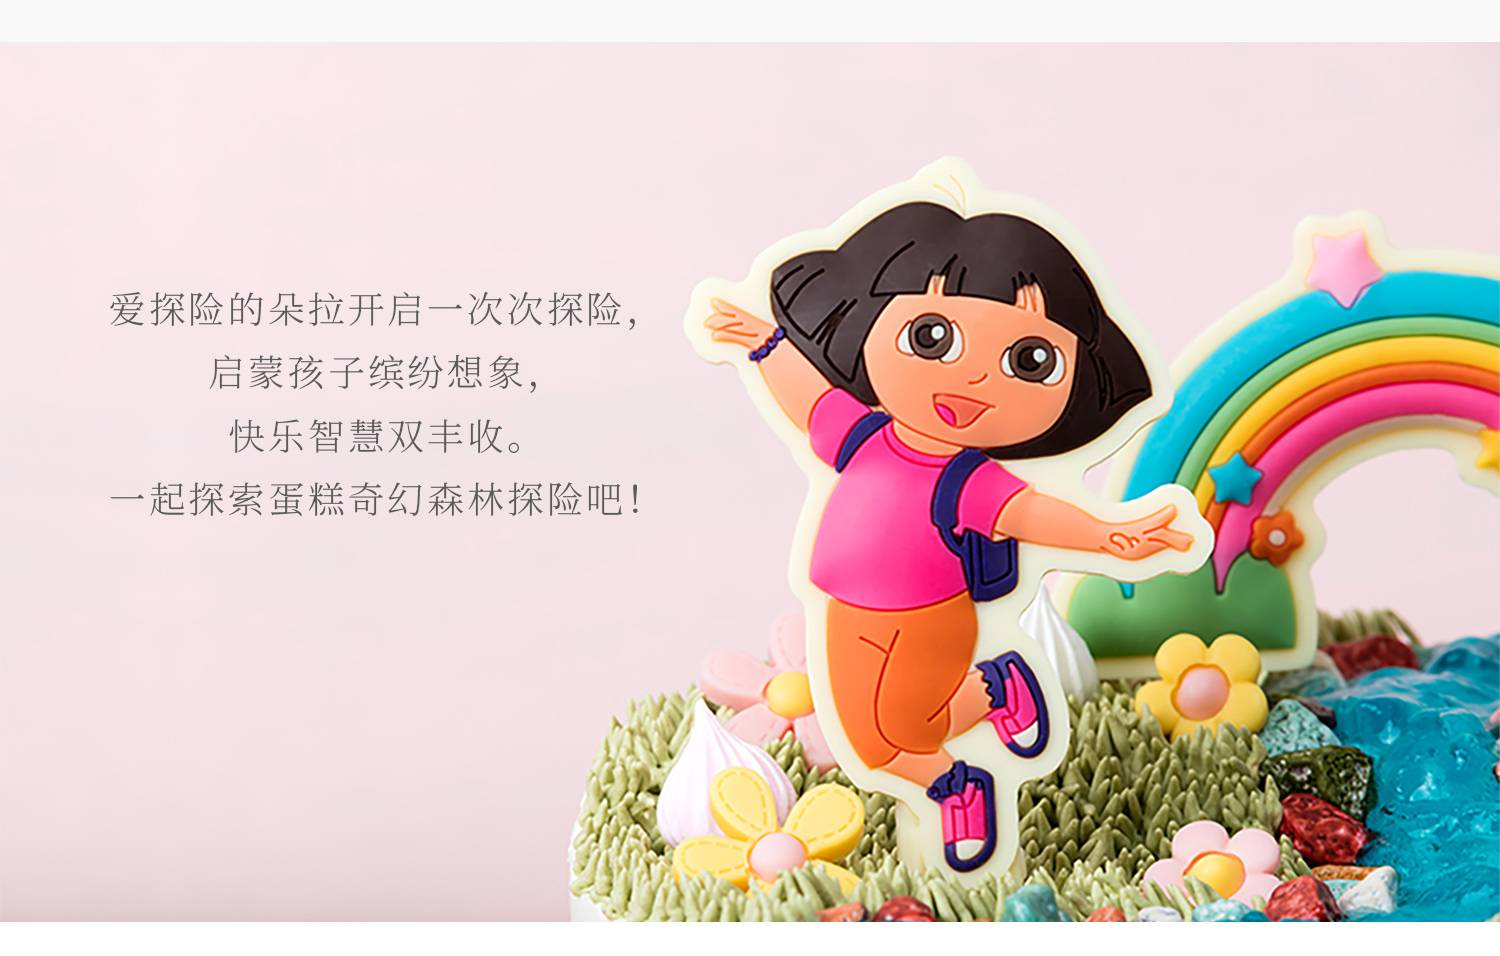 爱探险的朵拉_幸福西饼蛋糕预定_加盟幸福西饼_深圳幸福西饼官方网站